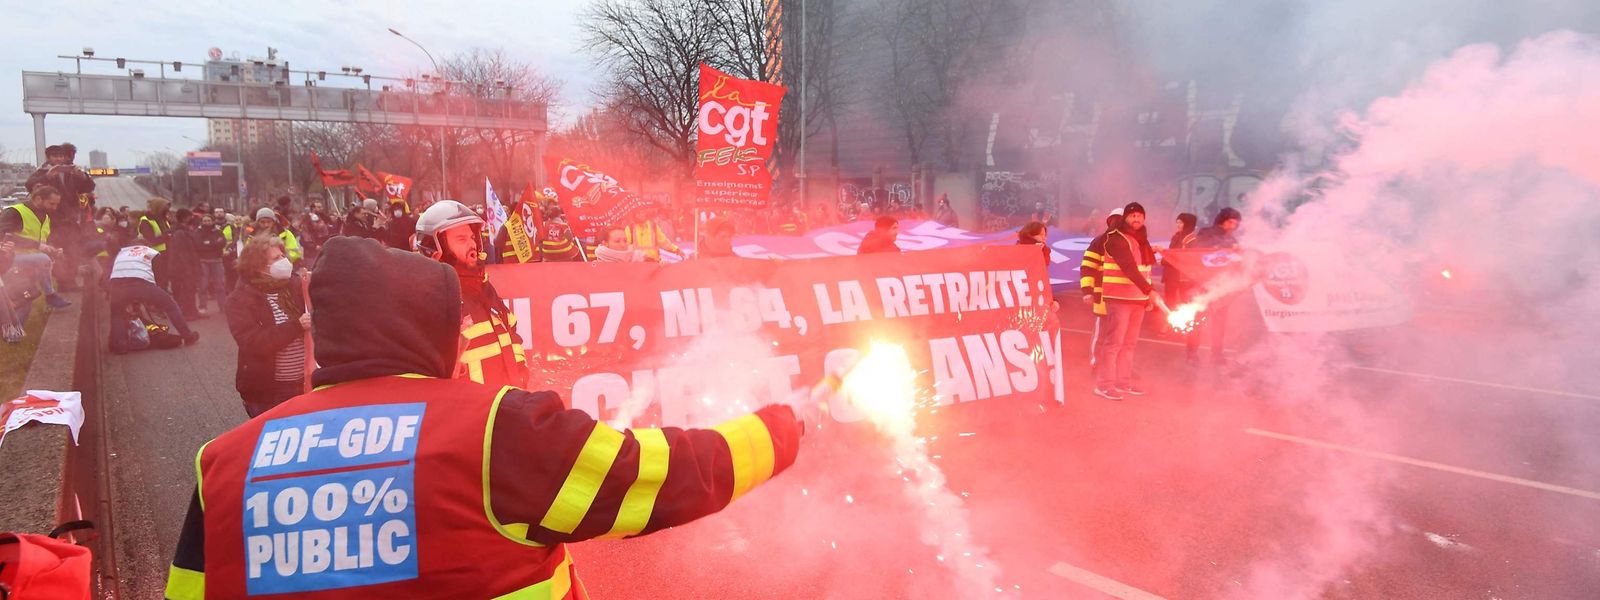 Protestos contra a reforma do sistema de pensões em França.